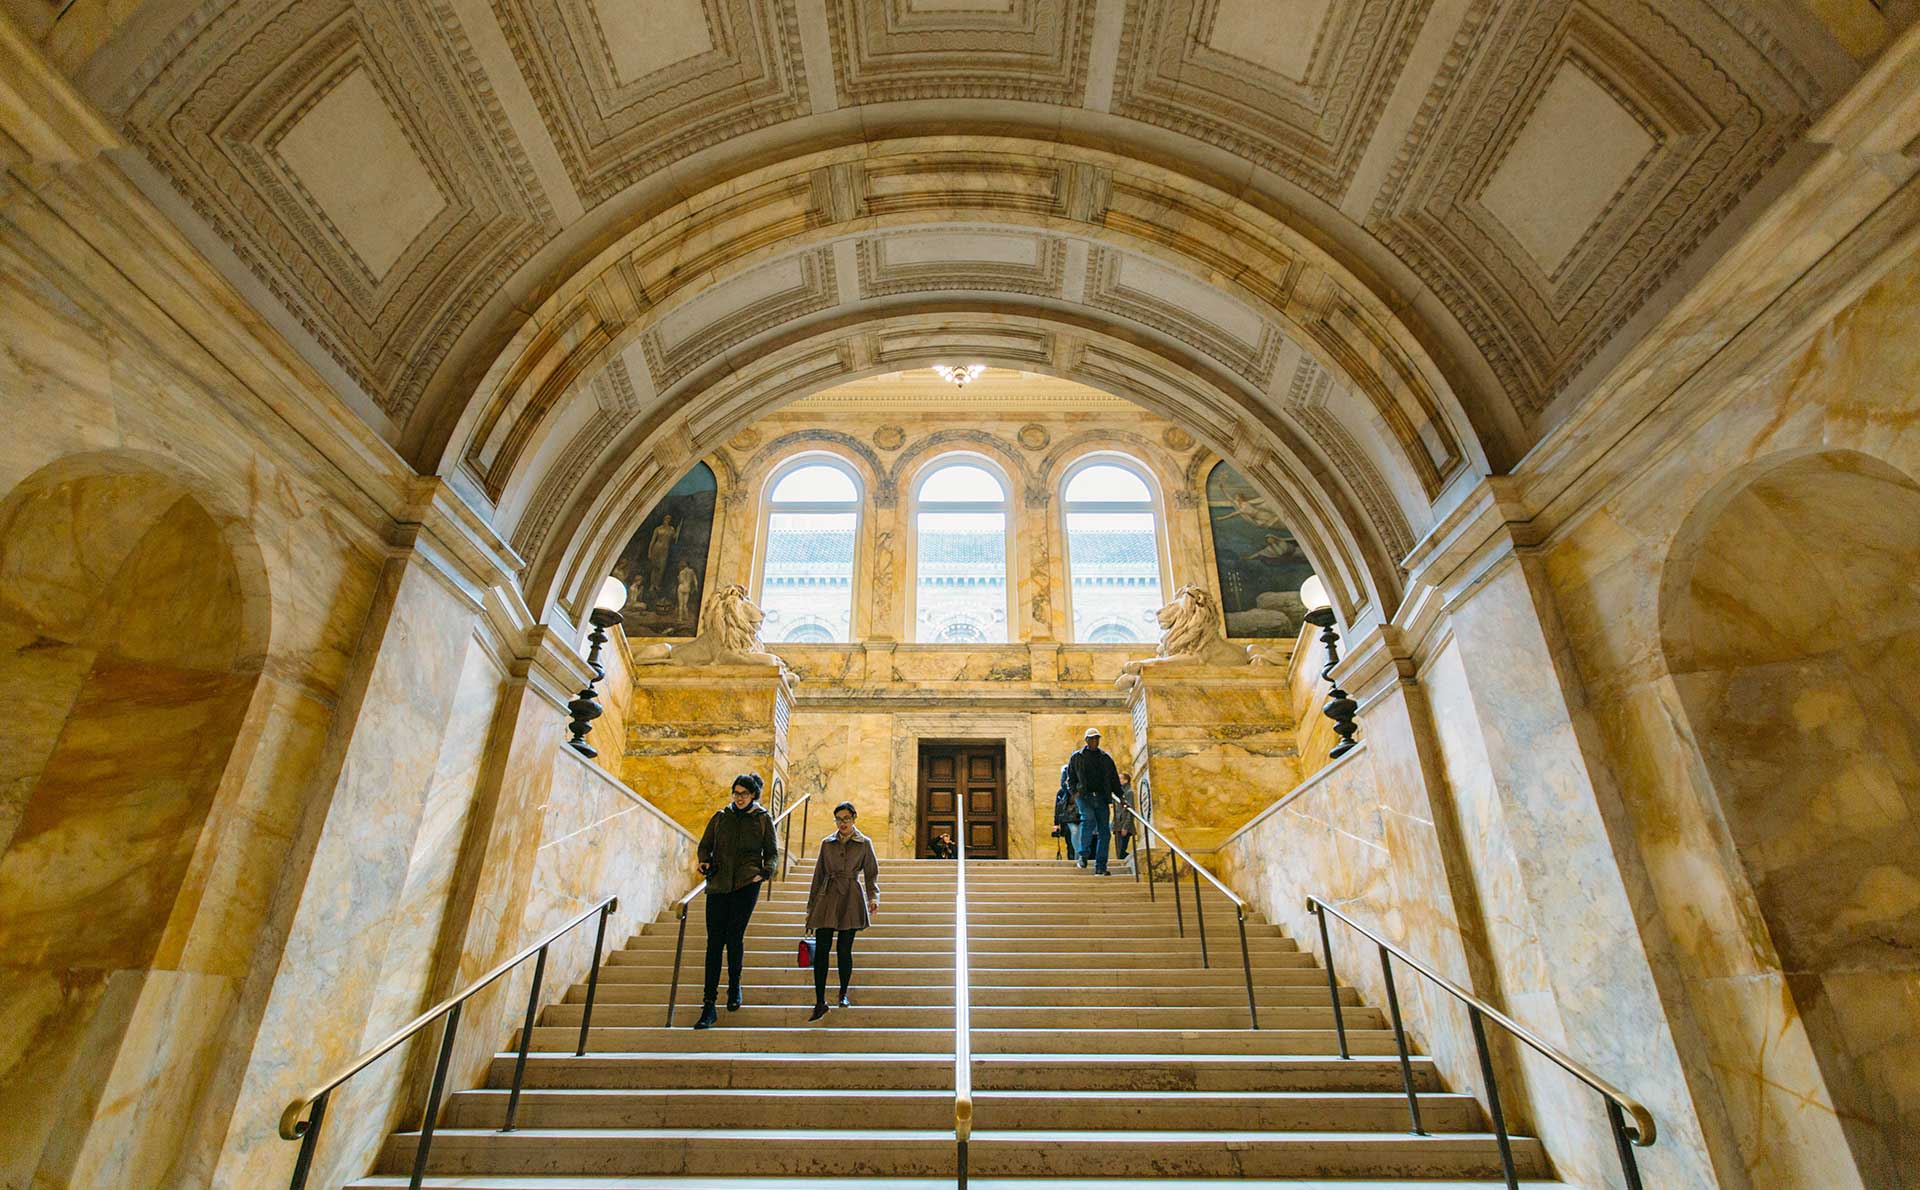 Interior image of ornate architecture in Boston